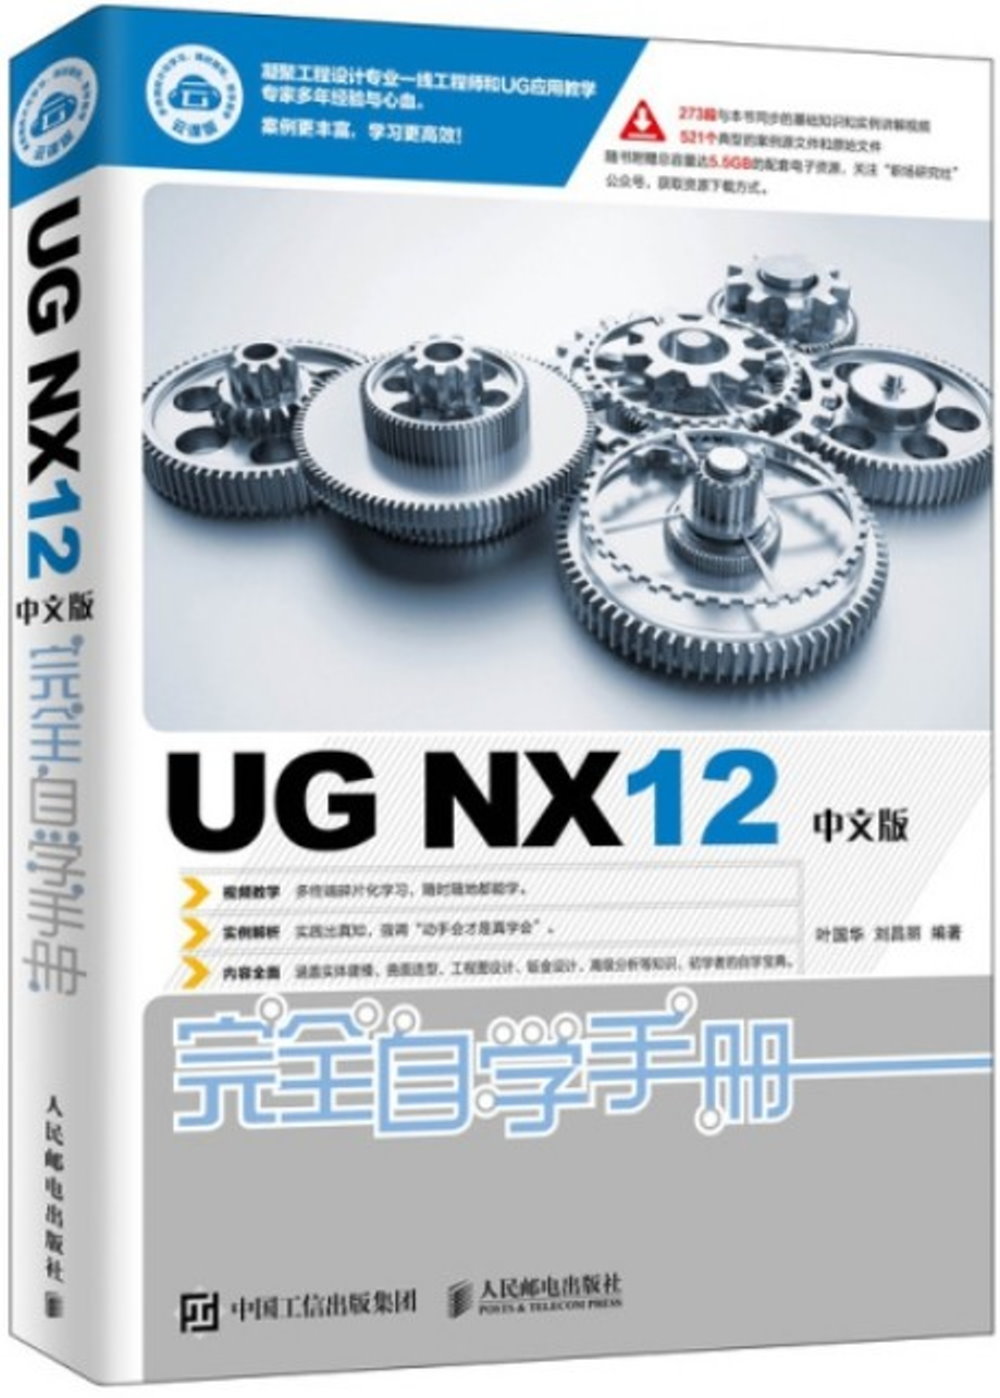 UG NX12中文版完全自學手冊